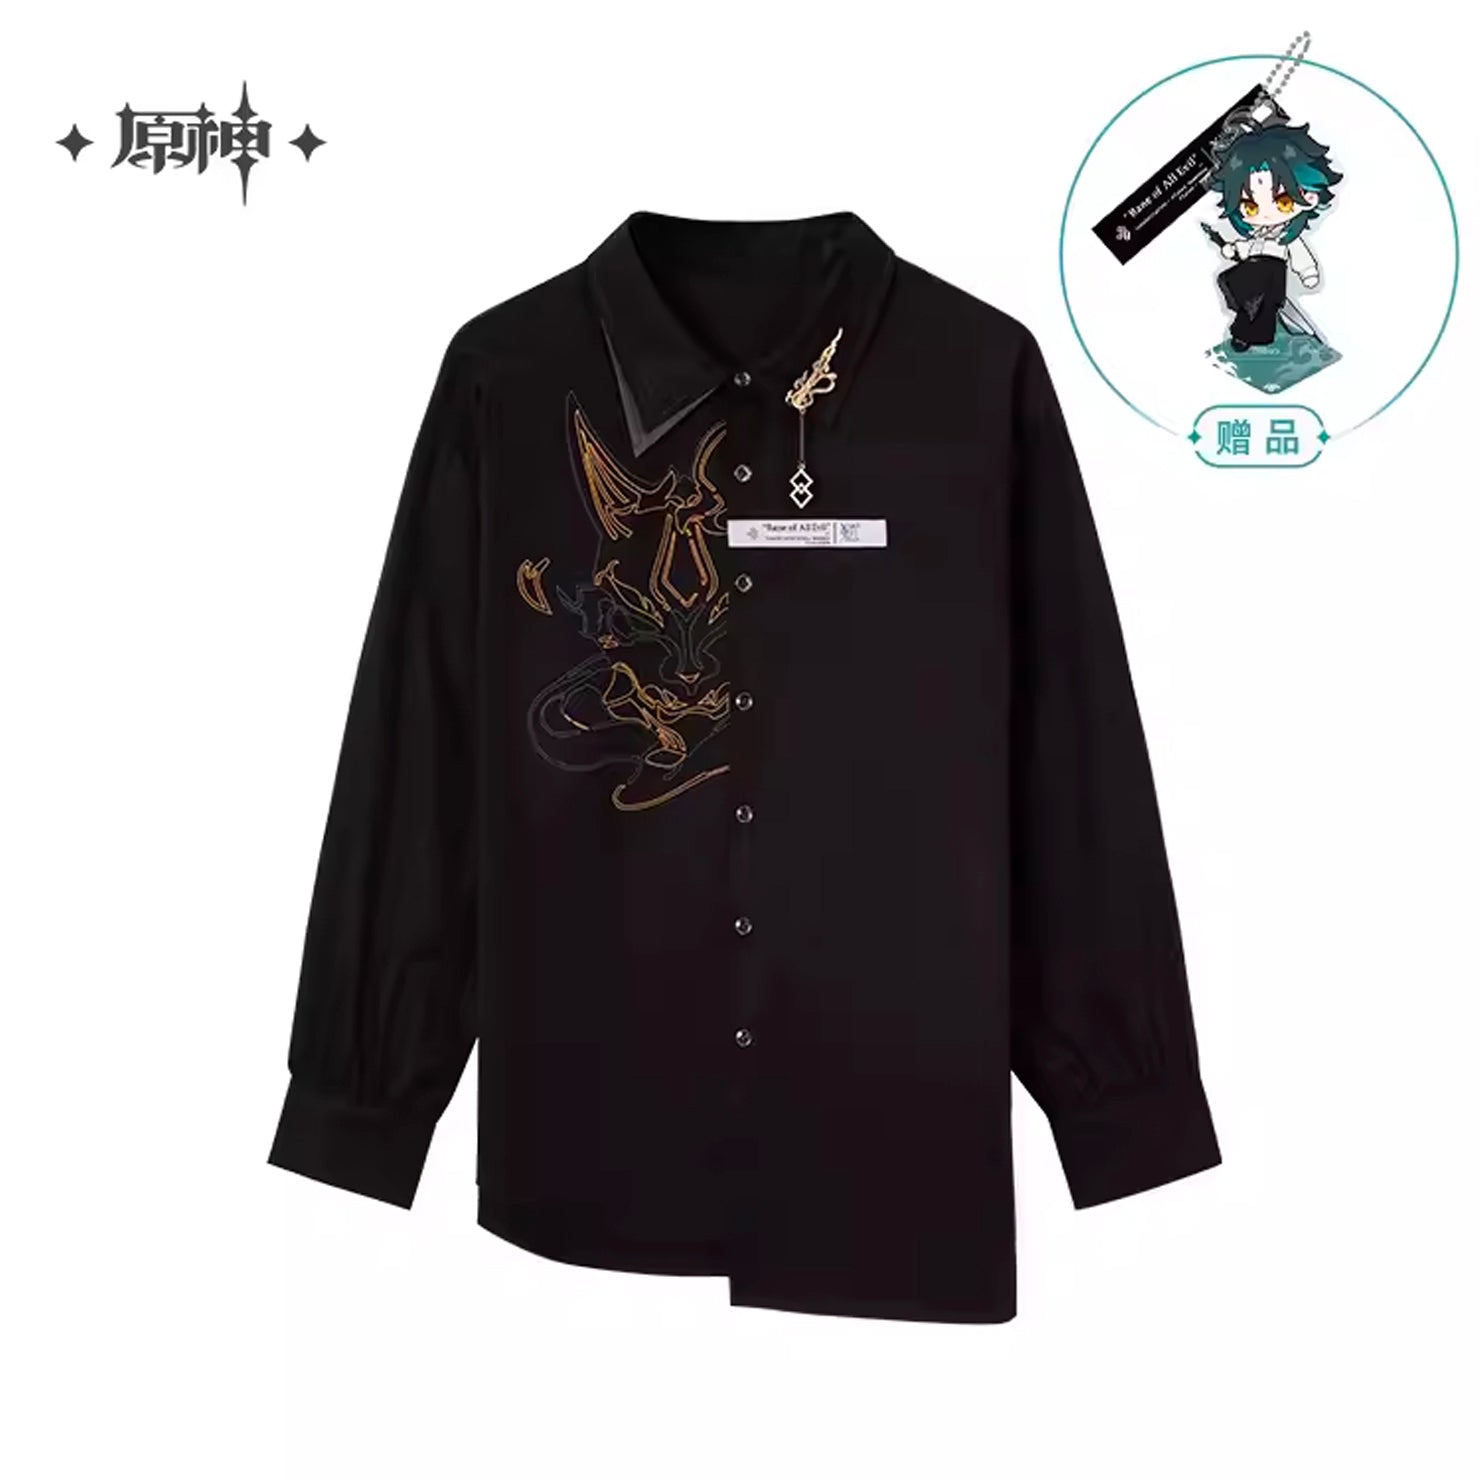 [OFFICIAL] Xiao Impression Apparel Series - Shirt - Teyvat Tavern - Genshin Merch